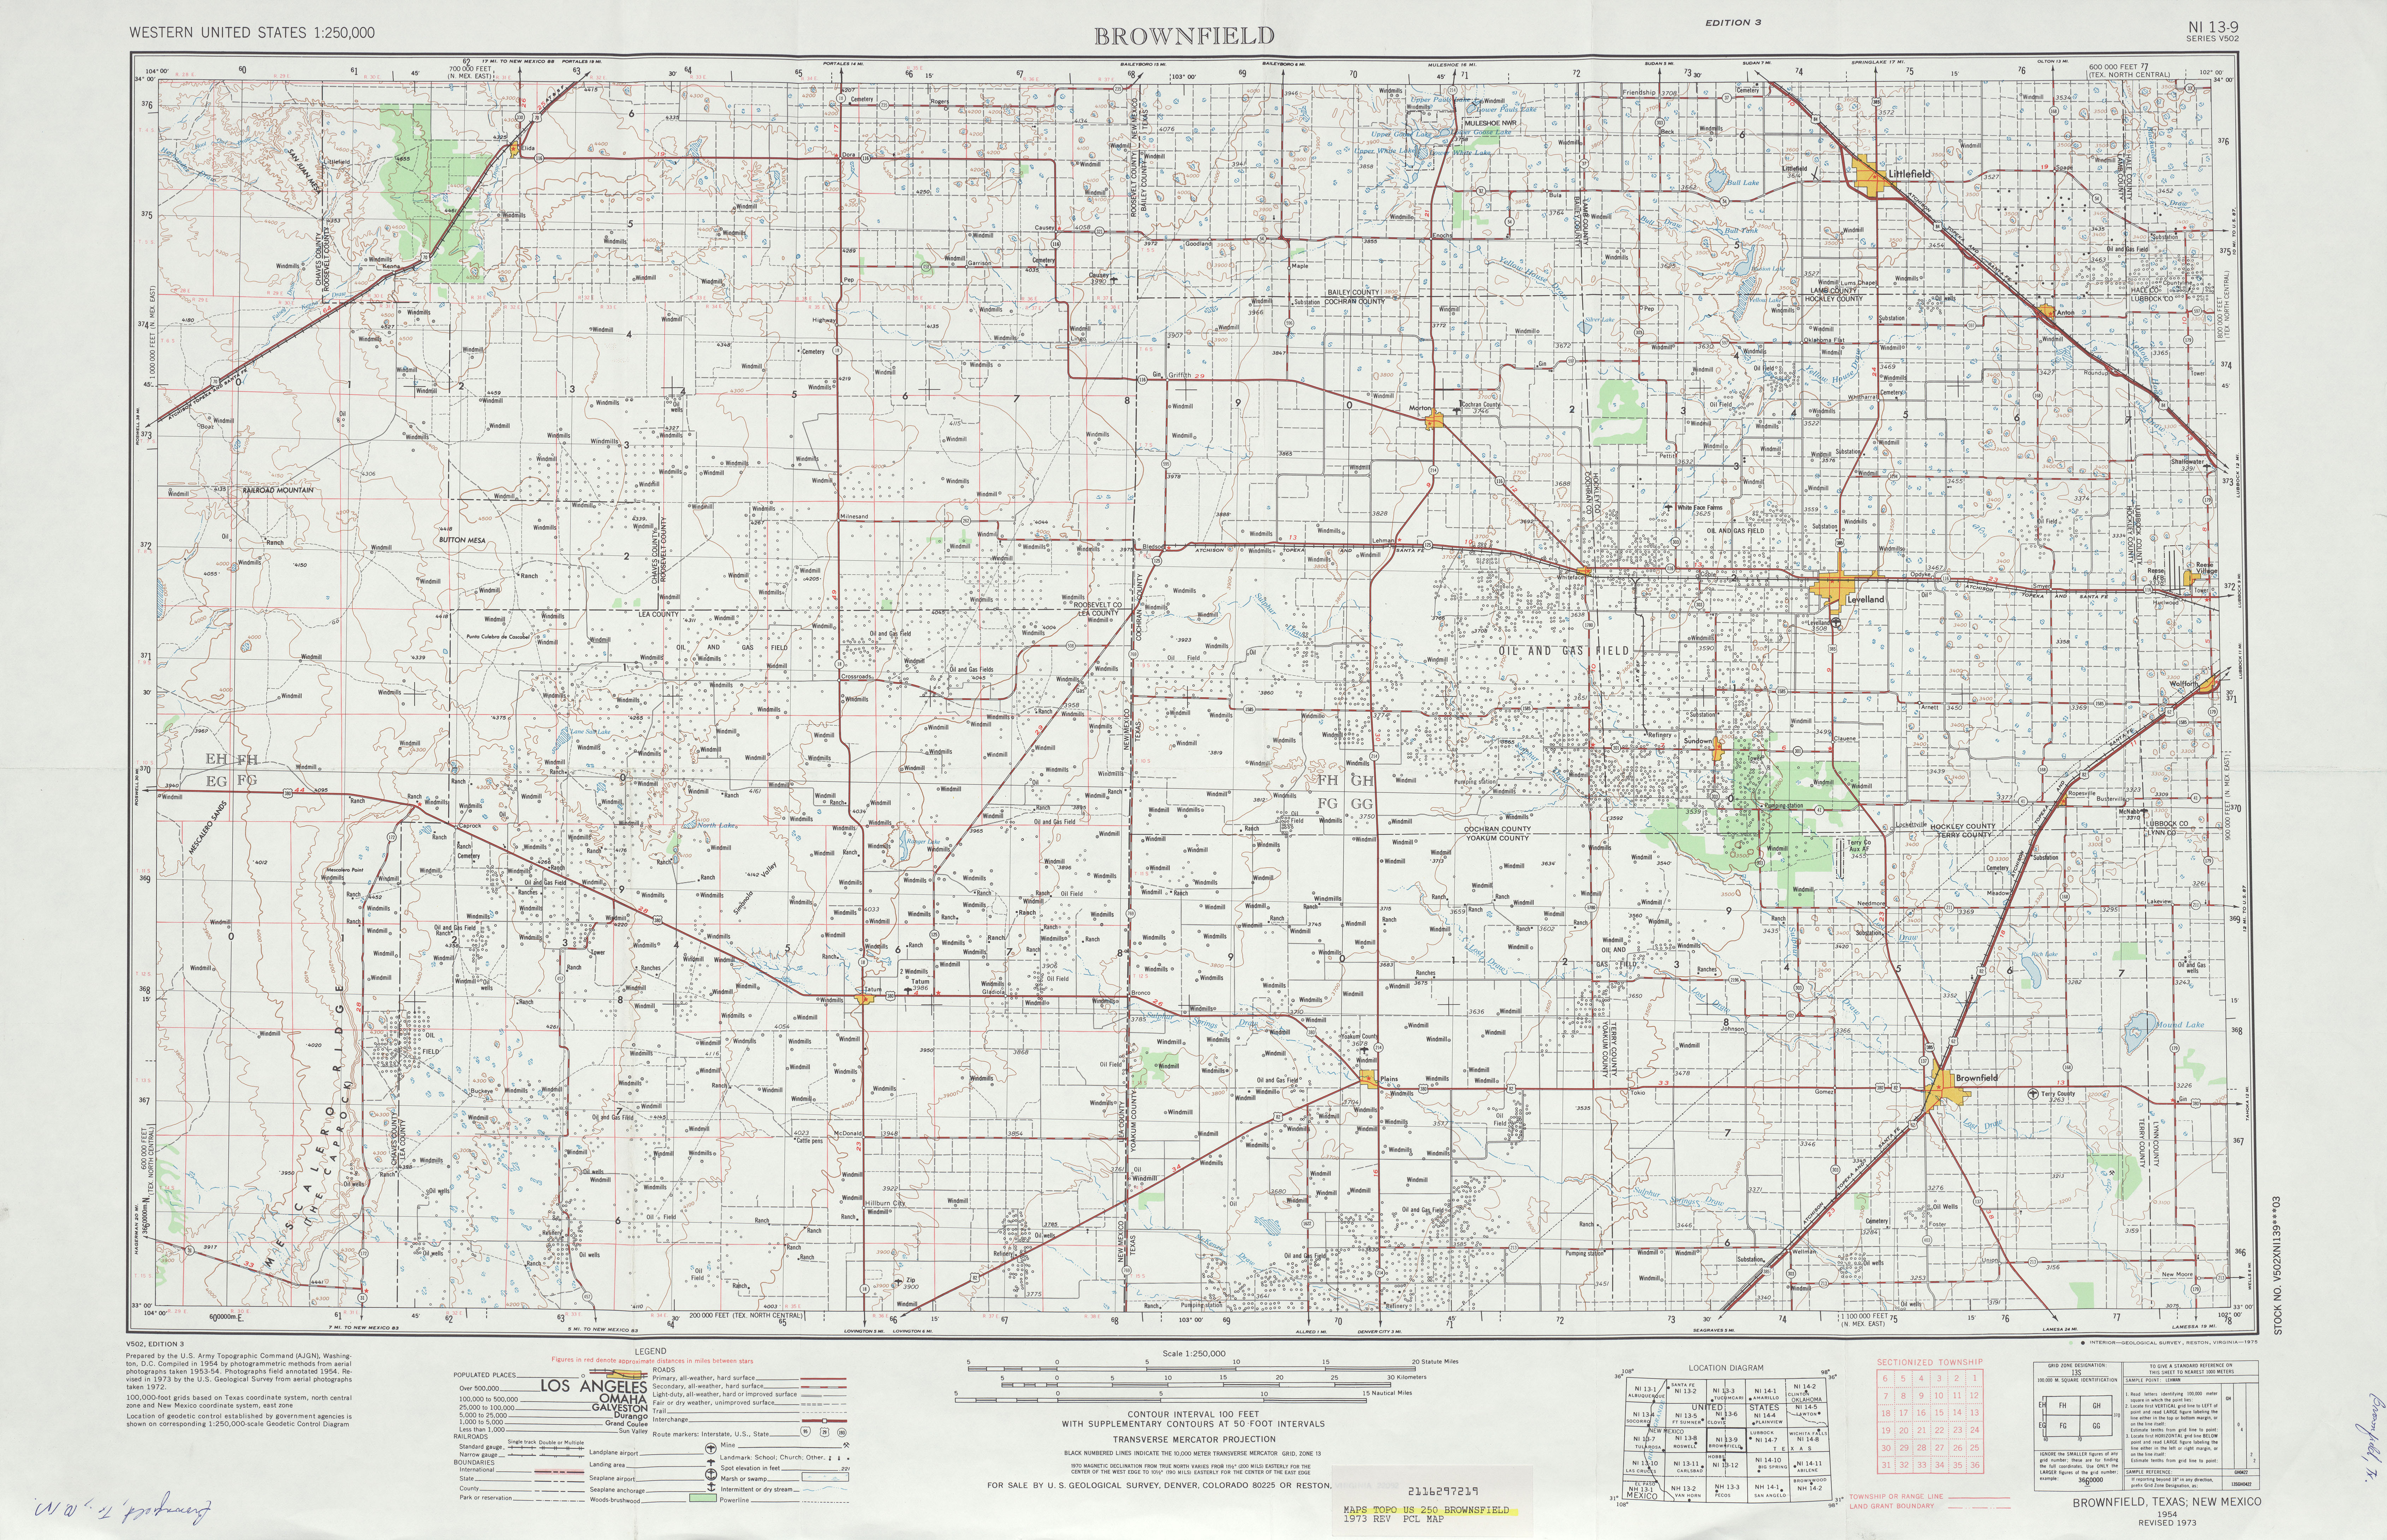 Hoja Brownfield del Mapa Topográfico de los Estados Unidos 1973